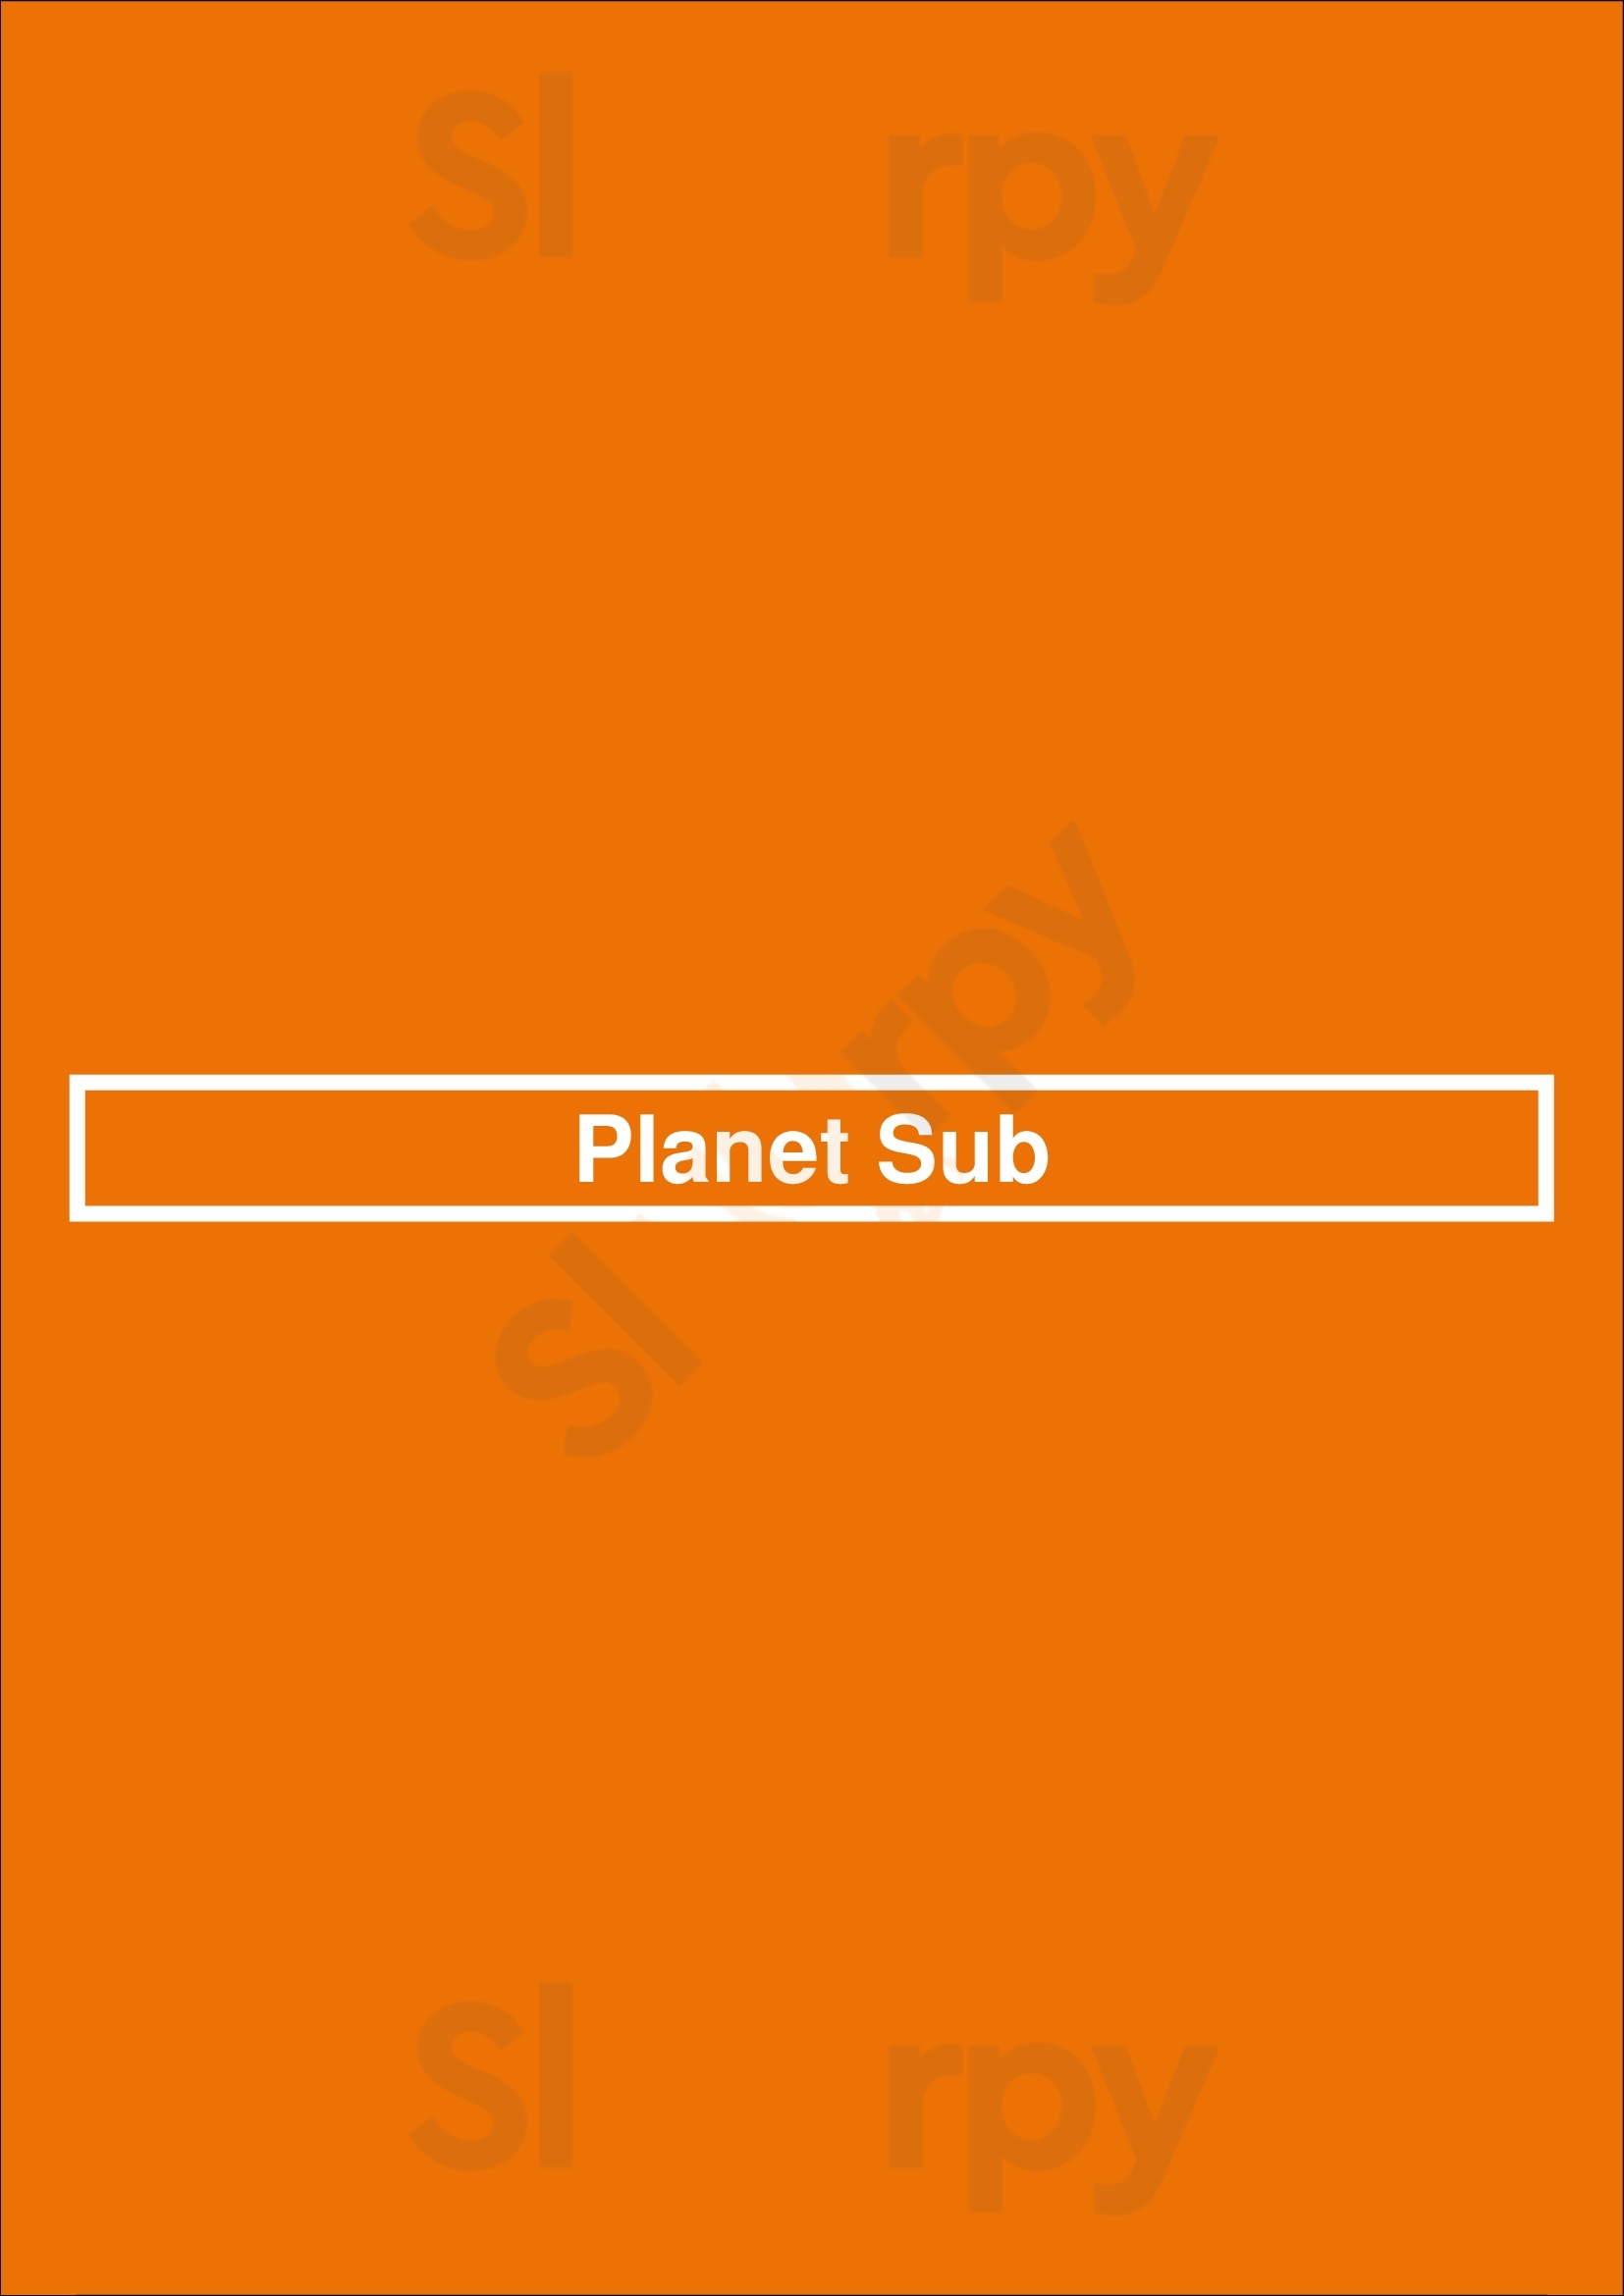 Planet Sub Tucson Menu - 1